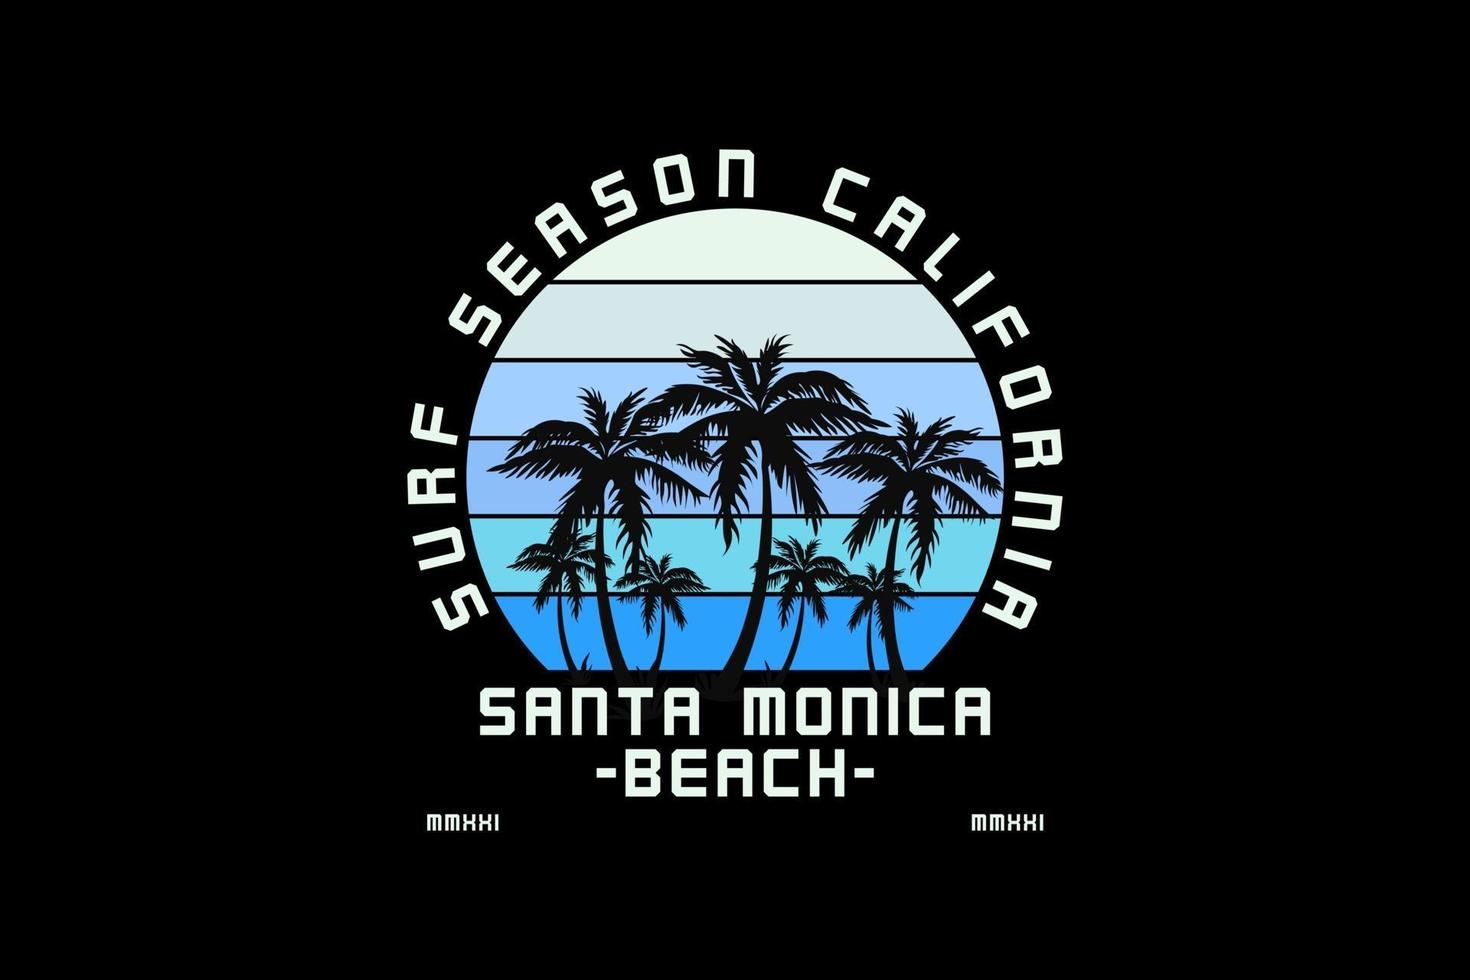 17. temporada de surf na Califórnia, silhueta retro estilo vintage vetor